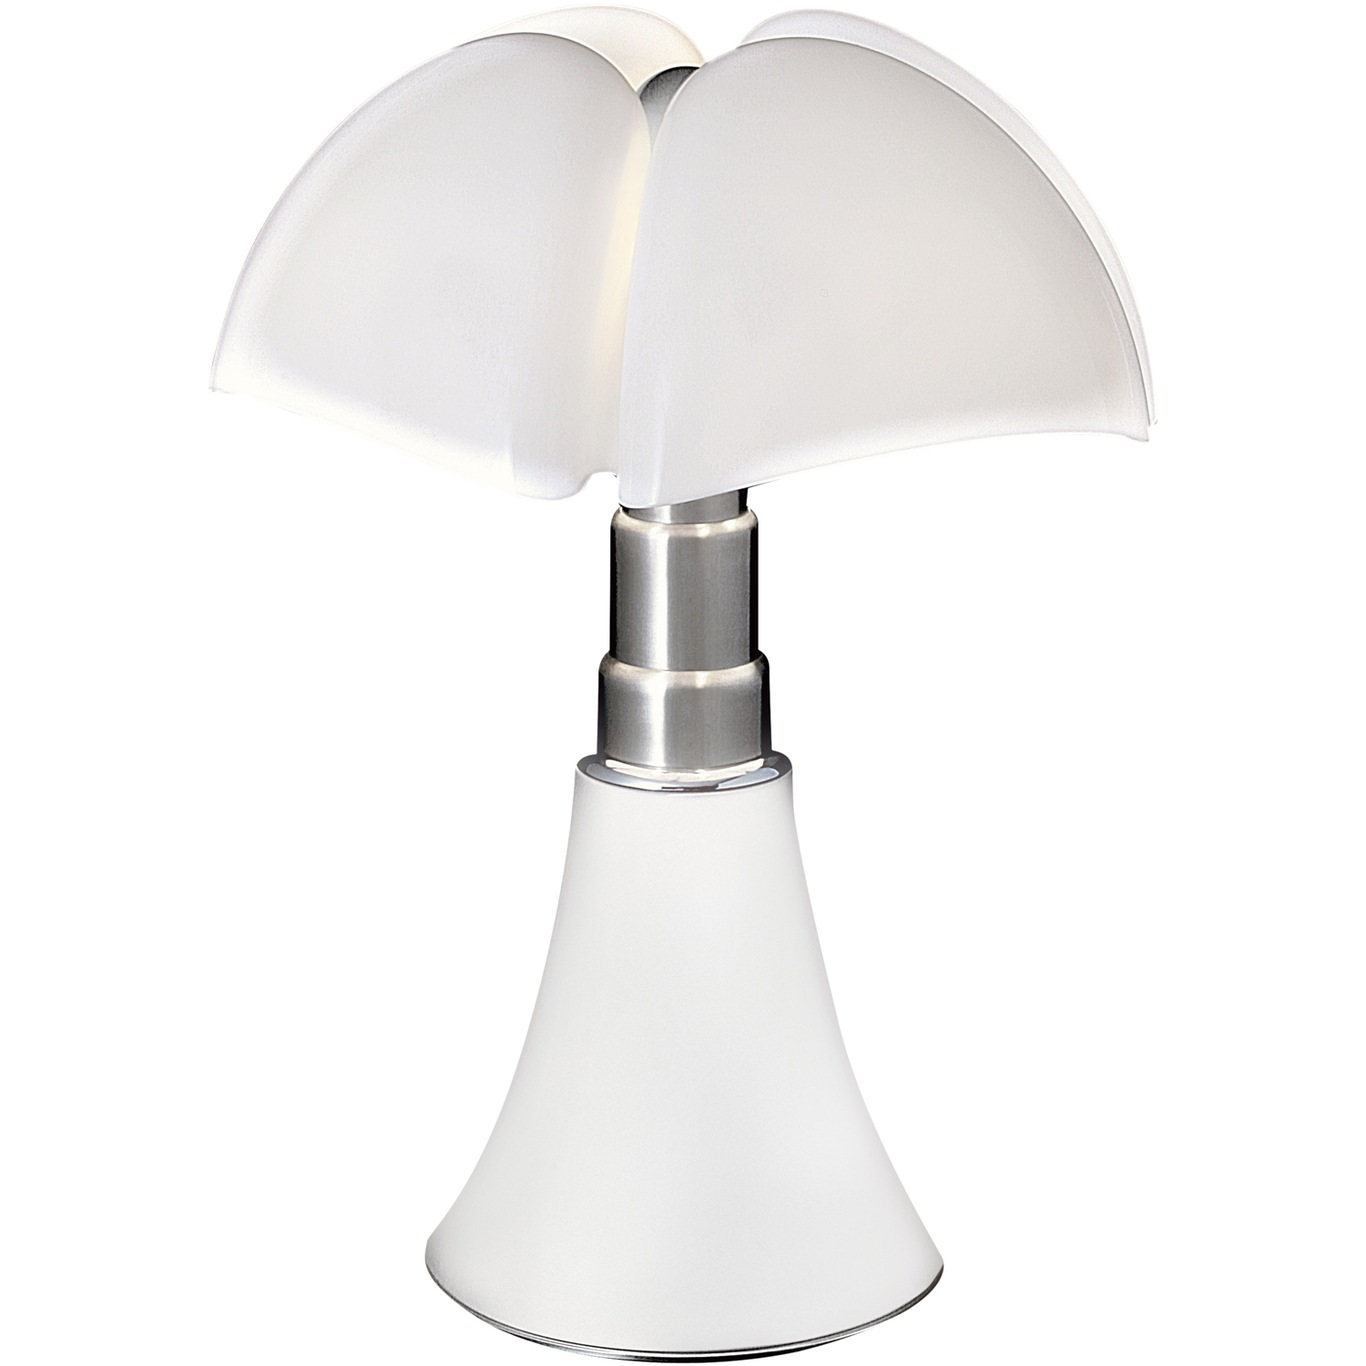 Pipistrello Mini Table Lamp LED, White